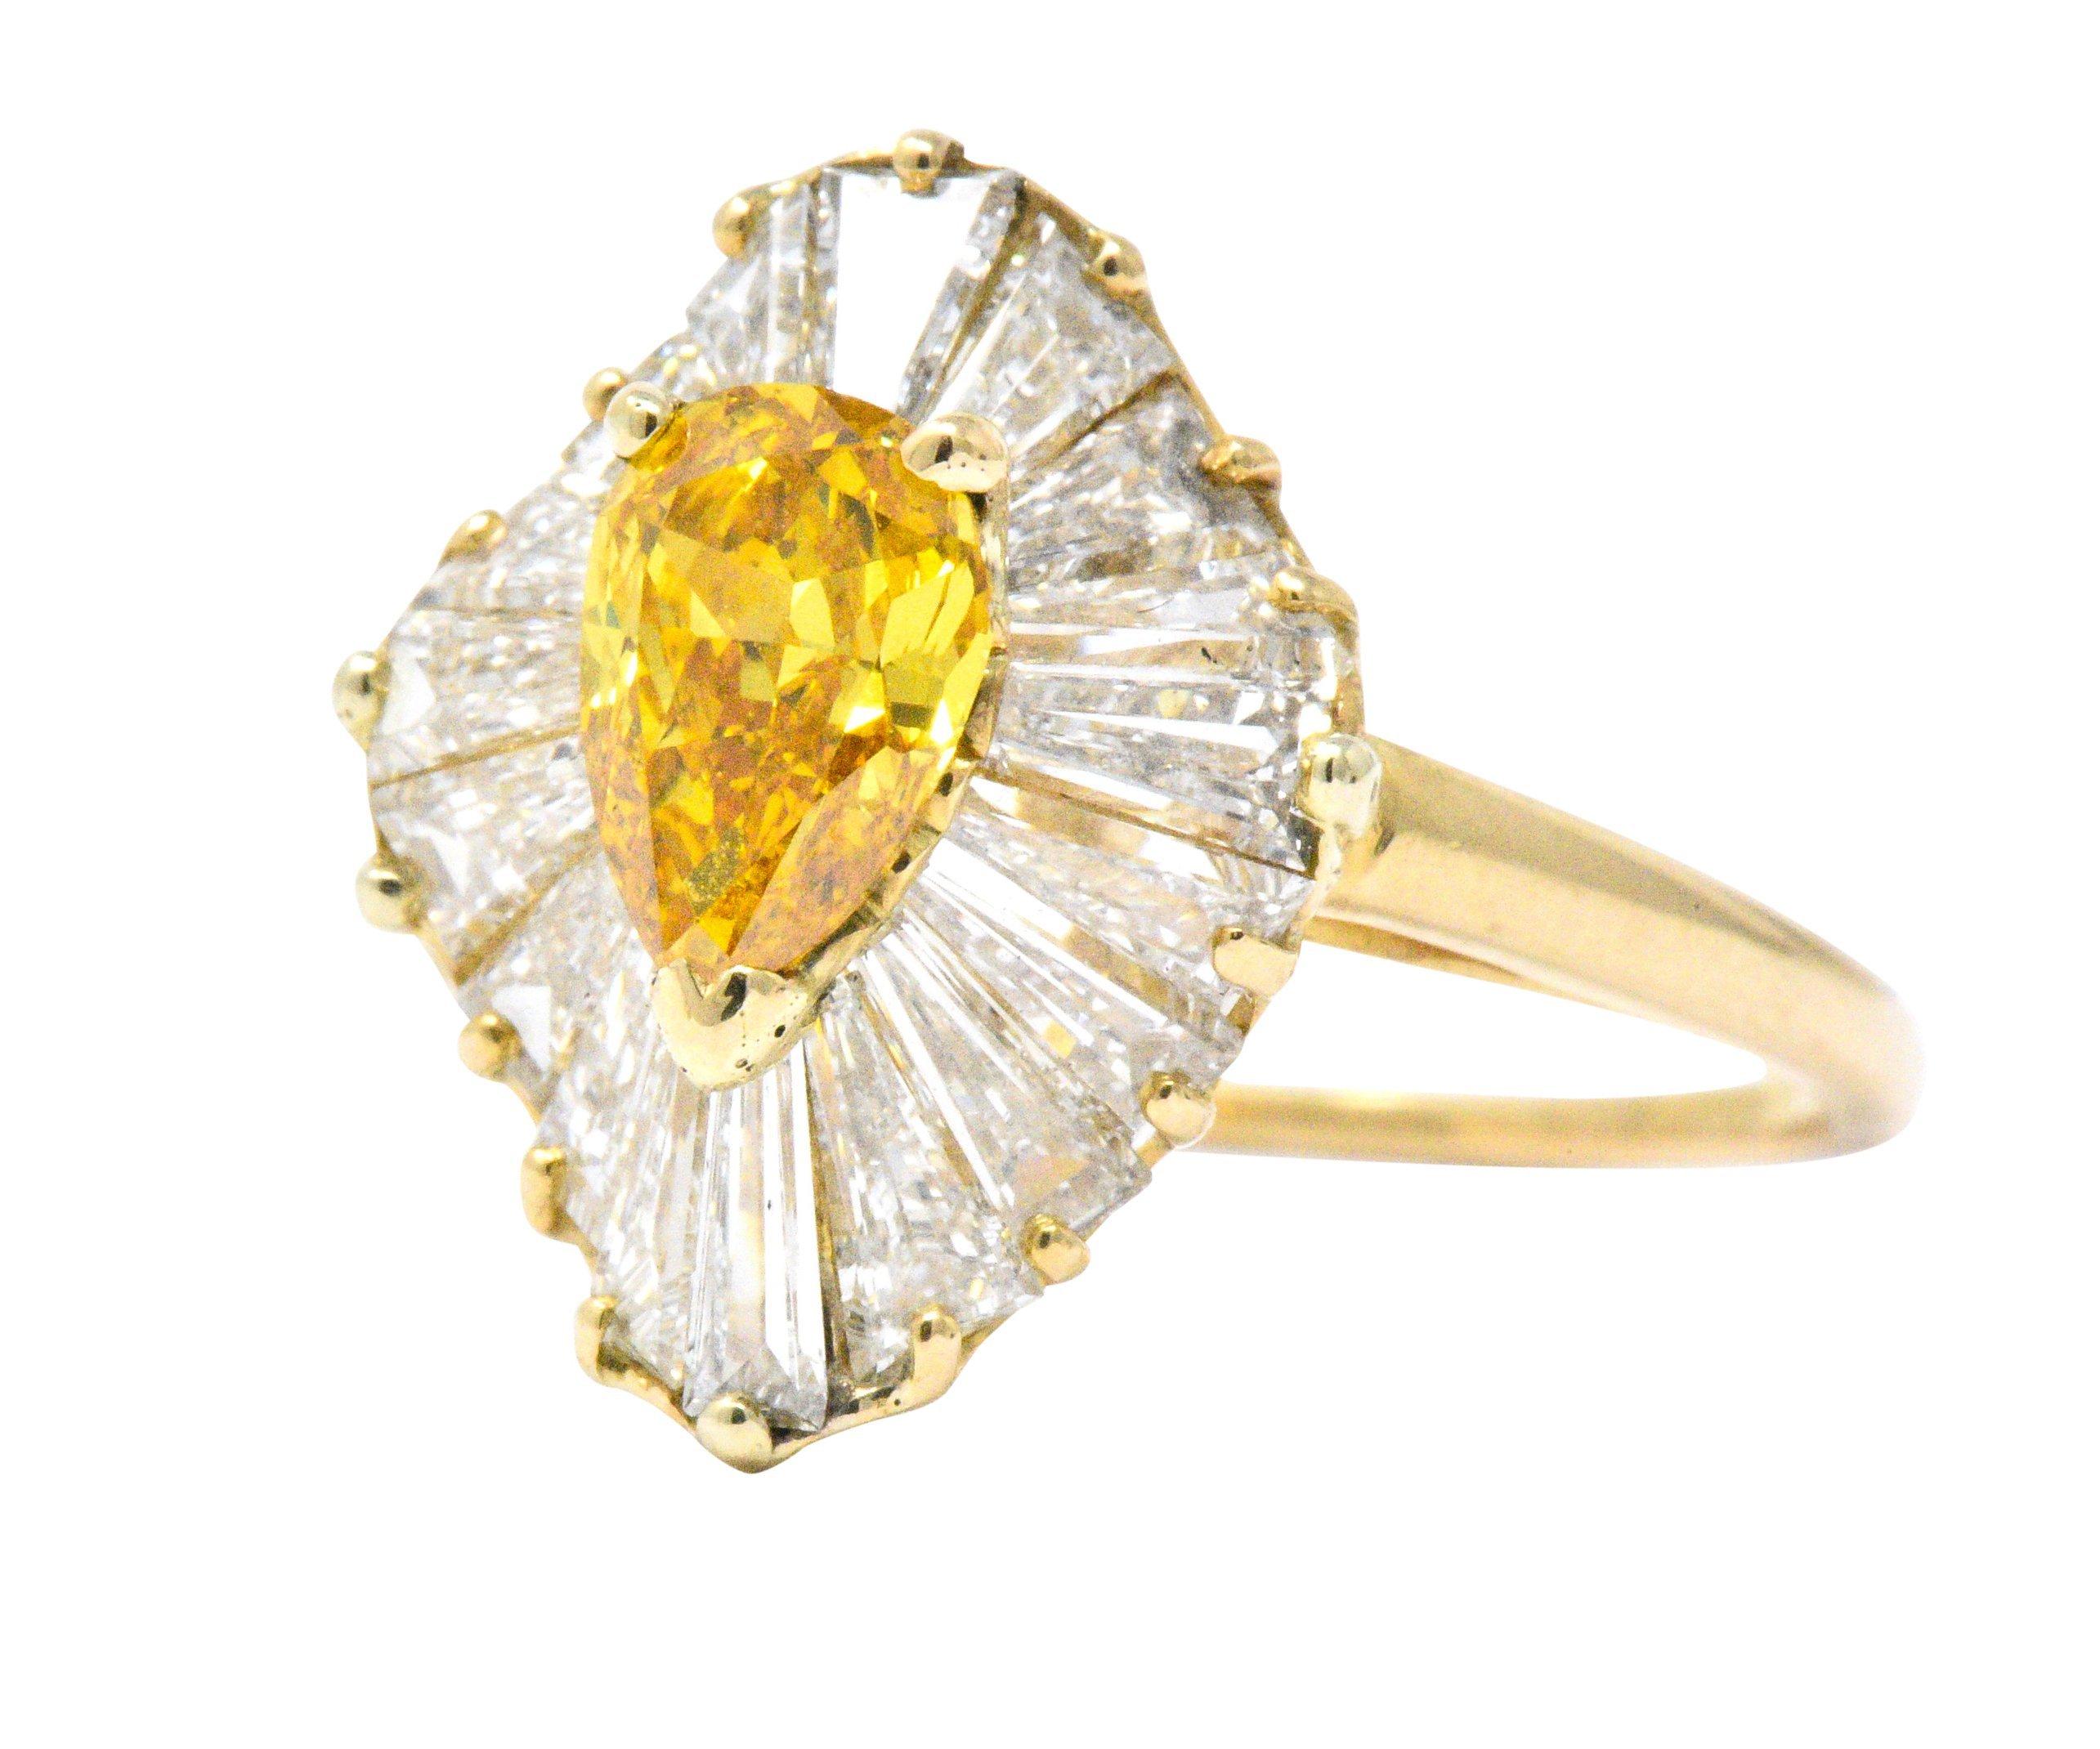 Pear Cut Oscar Heyman 2.74 Carats Fancy Yellow Diamond 18 Karat Gold Ballerina Halo Ring